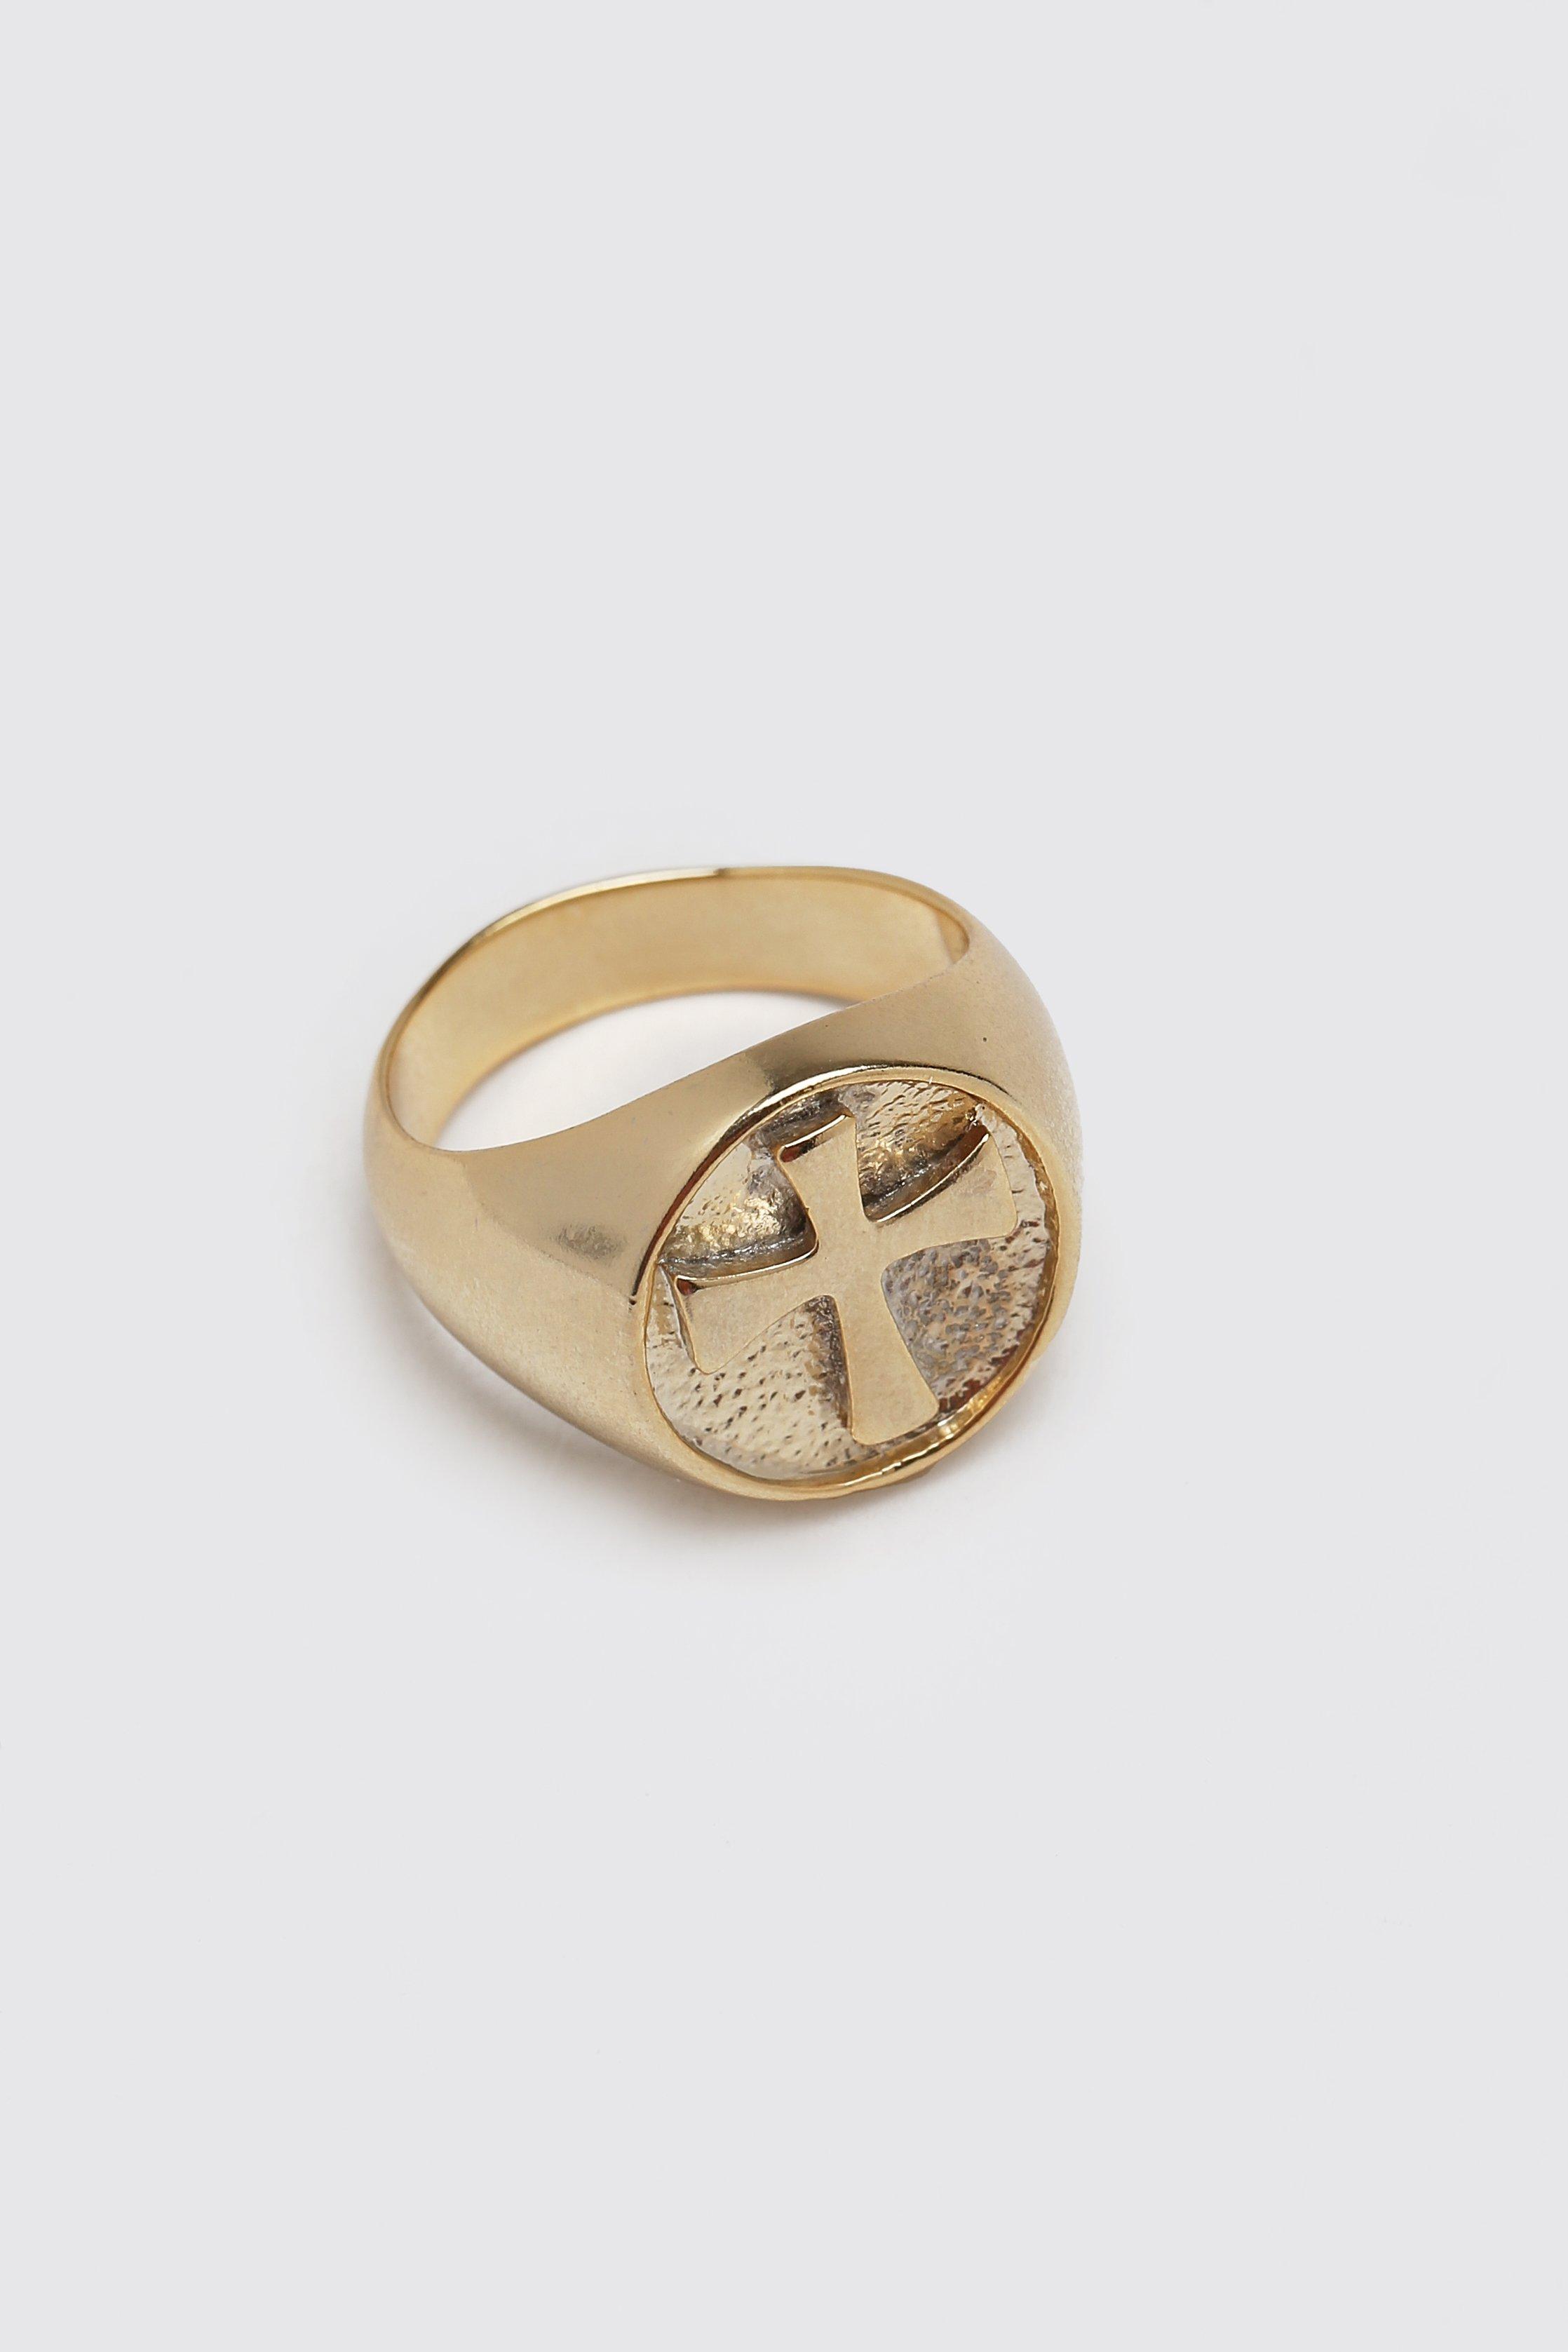 BoohooMAN Cross Emblem Signet Ring in Gold Mens Rings BoohooMAN Rings for Men Metallic 